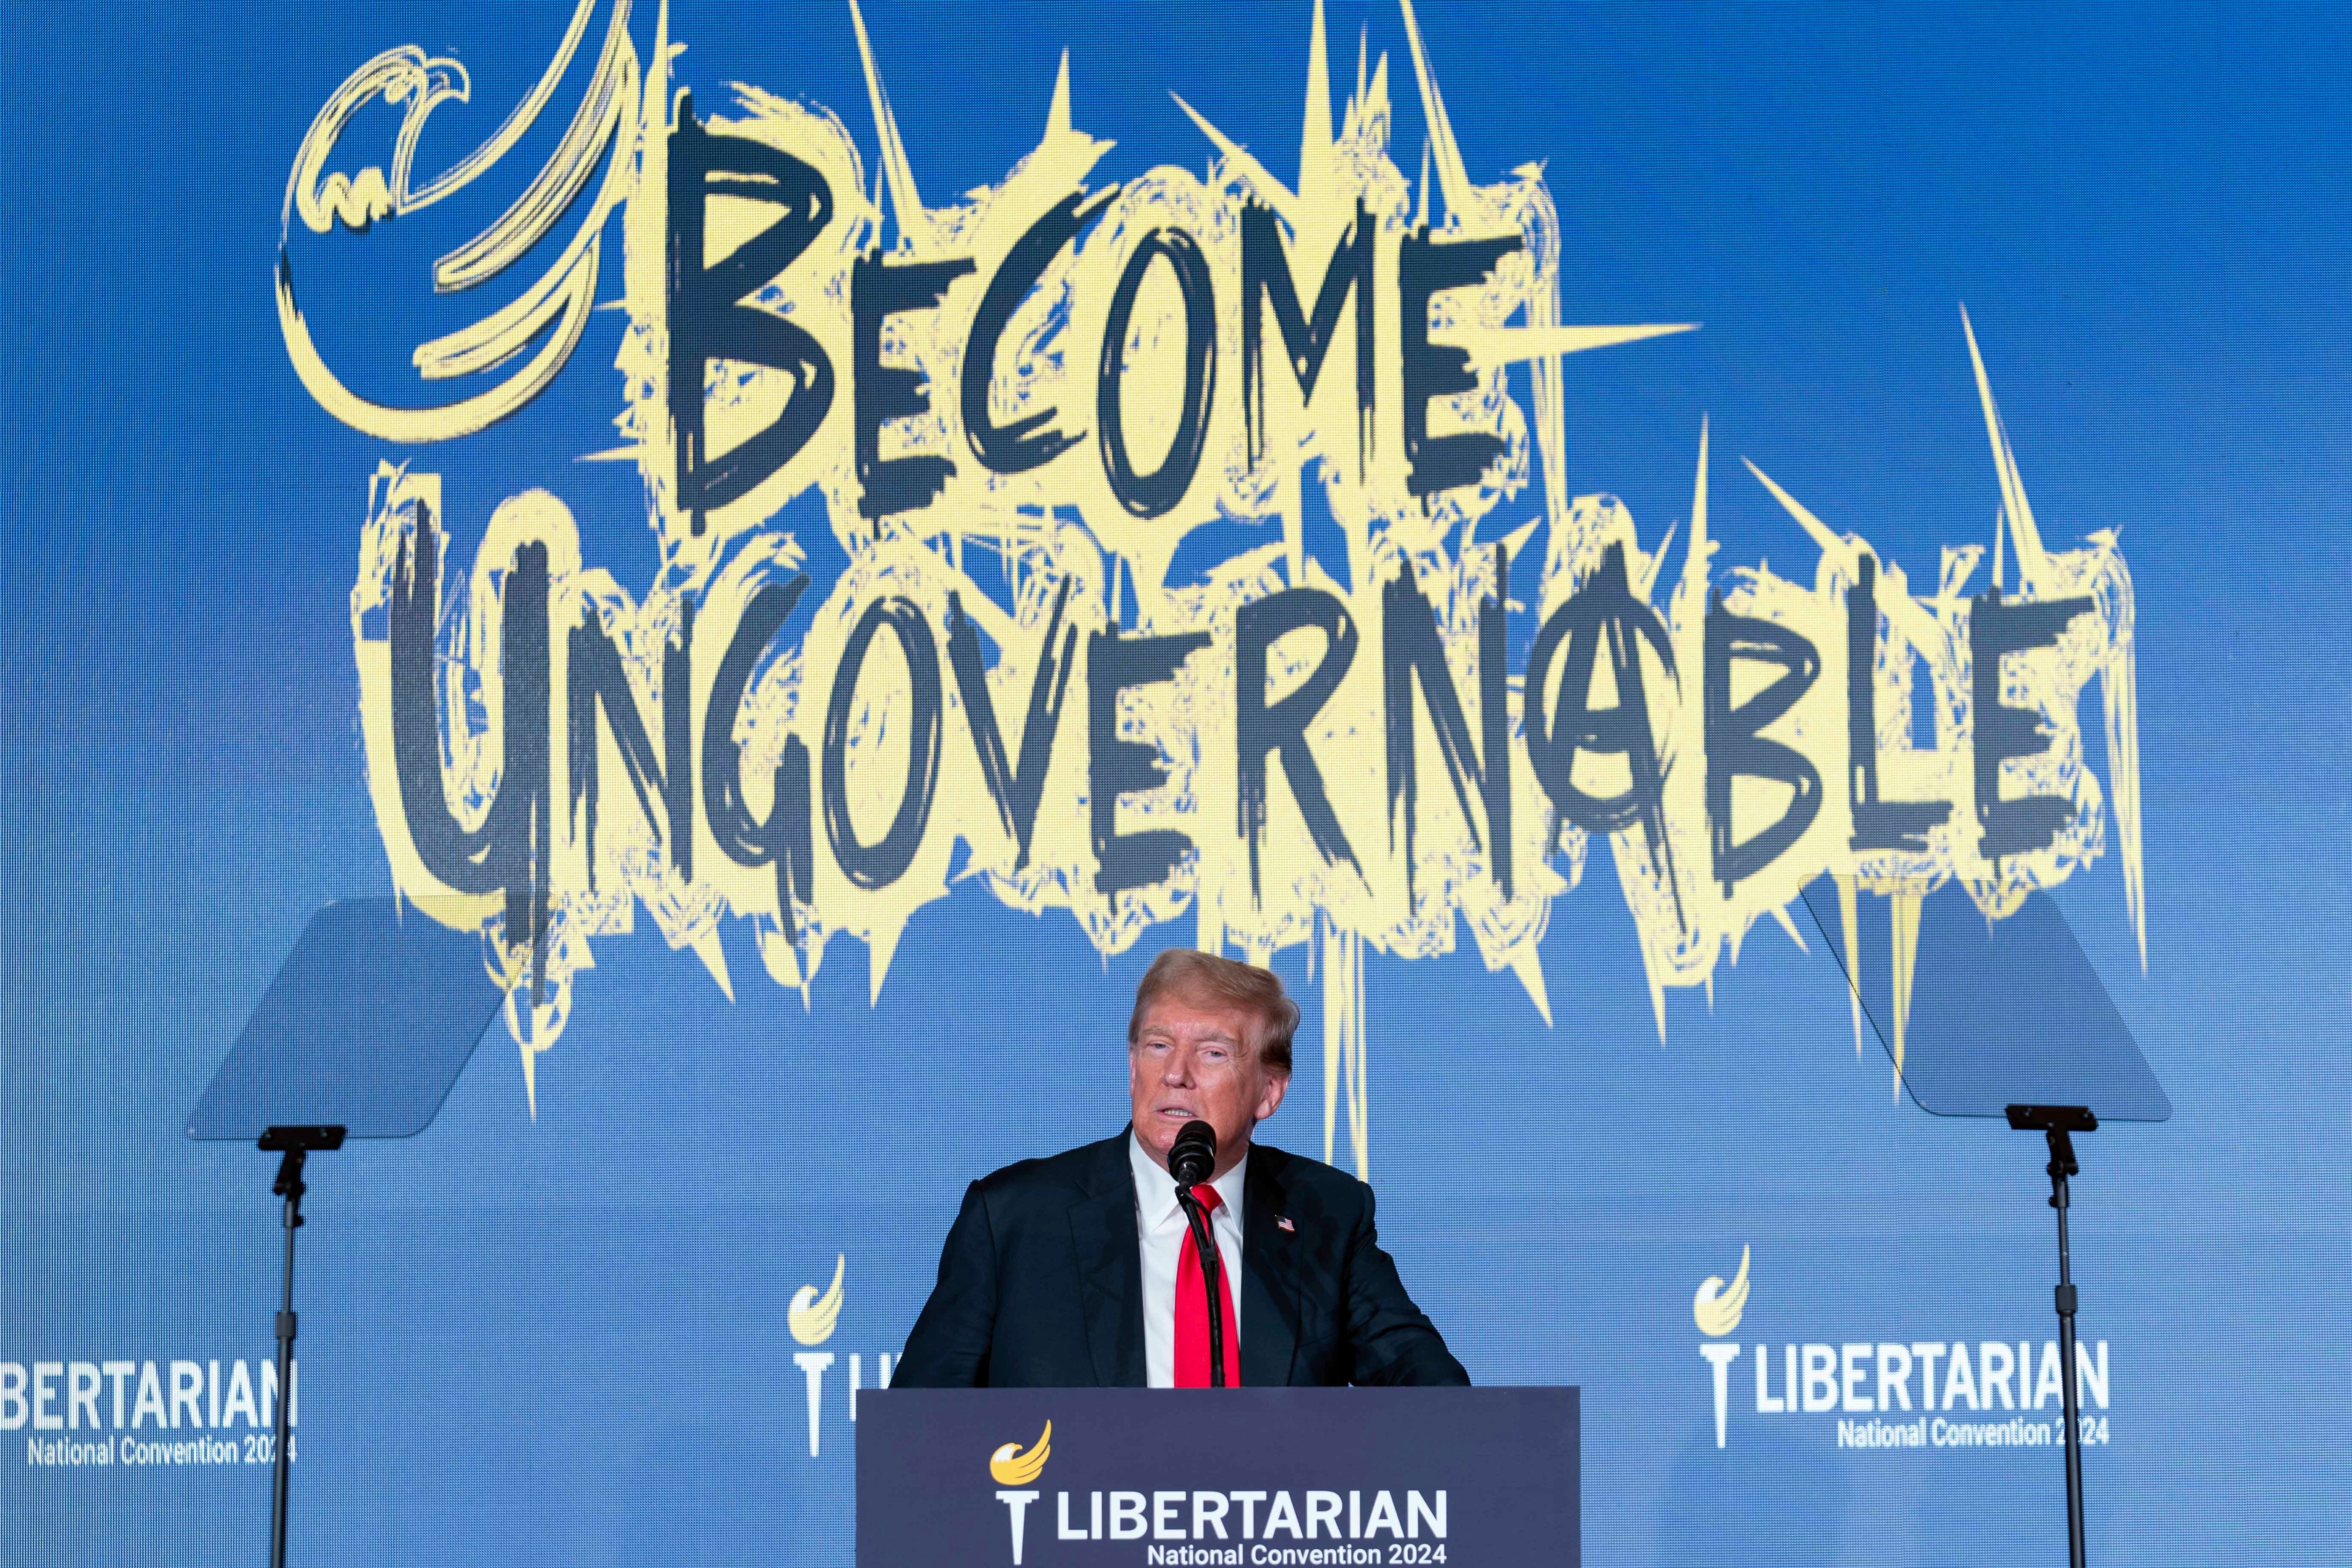 El expresidente estadounidense y candidato republicano a la presidencia, Donald Trump, pronuncia un discurso en la Convención Nacional del Partido Libertario en Washington D. C.